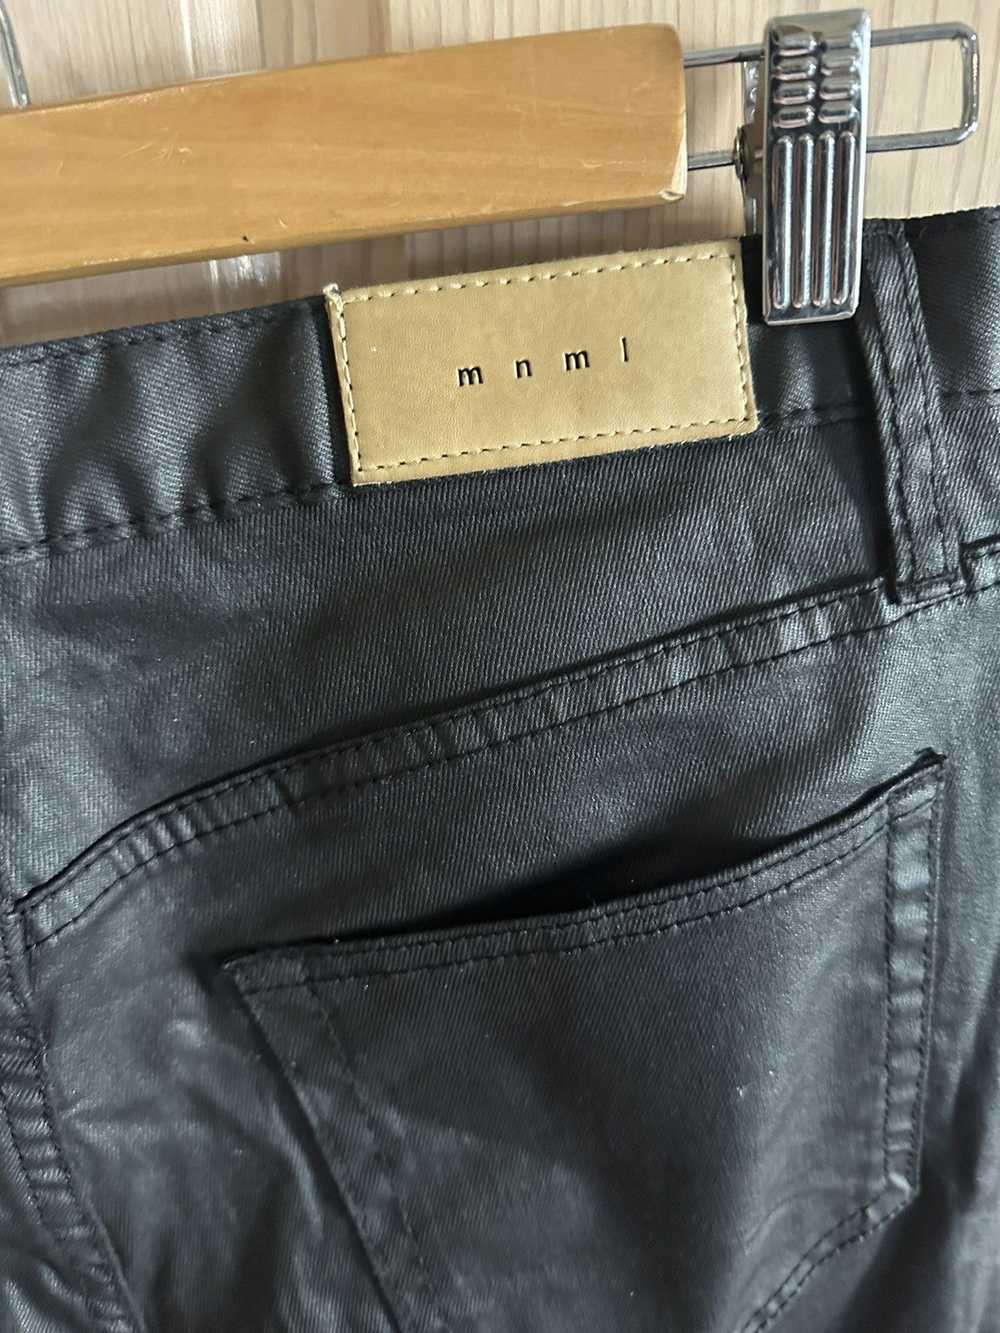 MNML Mnml leather jeans - image 5